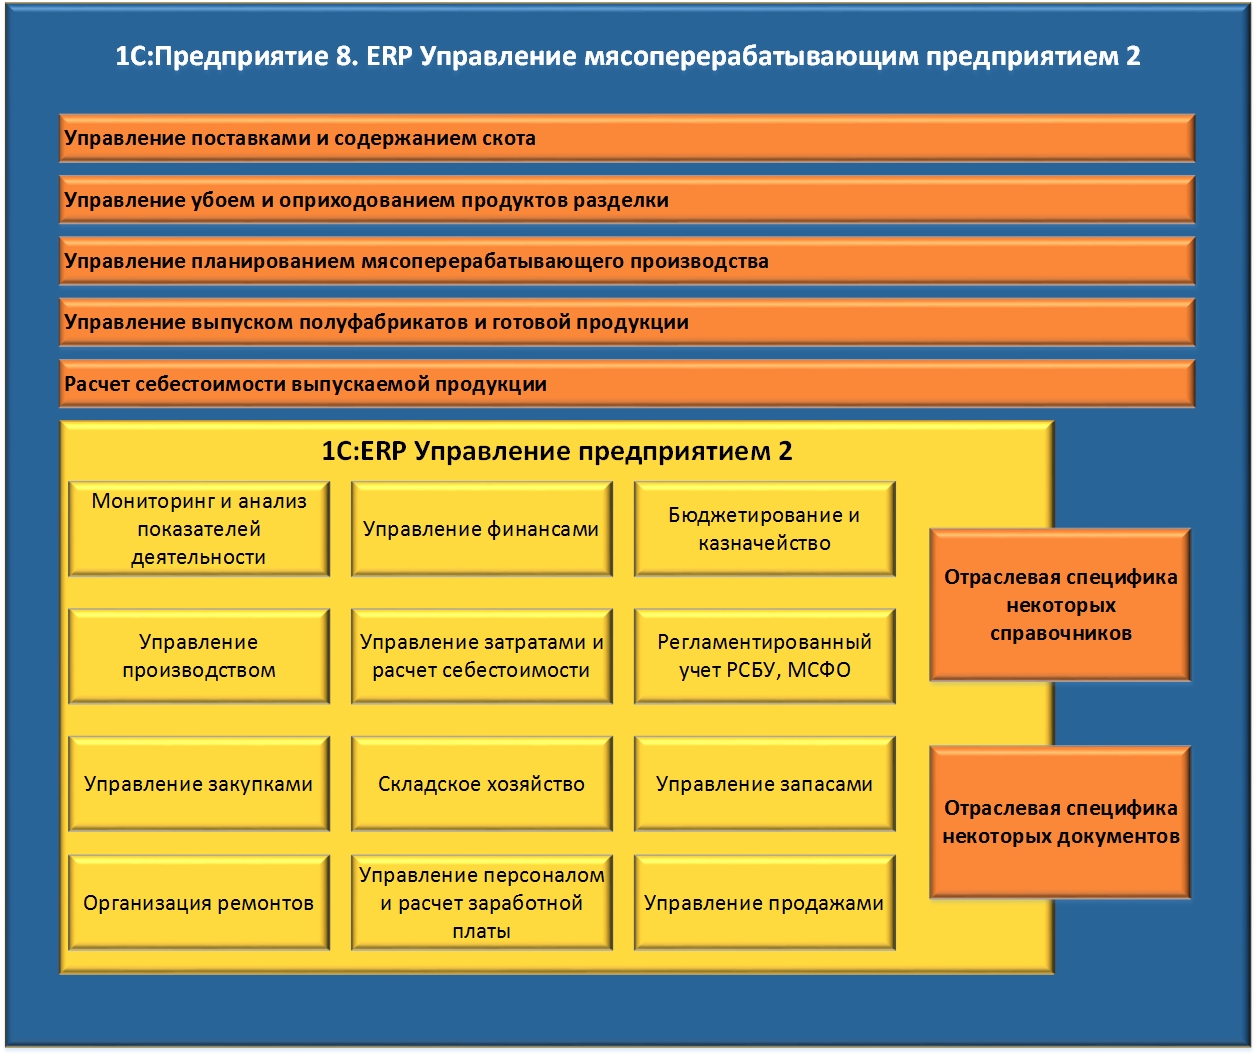 Архитектура комплексного ERP-решения при использовании модуля «Управление мясоперерабатывающим предприятием» совместно с «1С:ERP Управление предприятием 2»